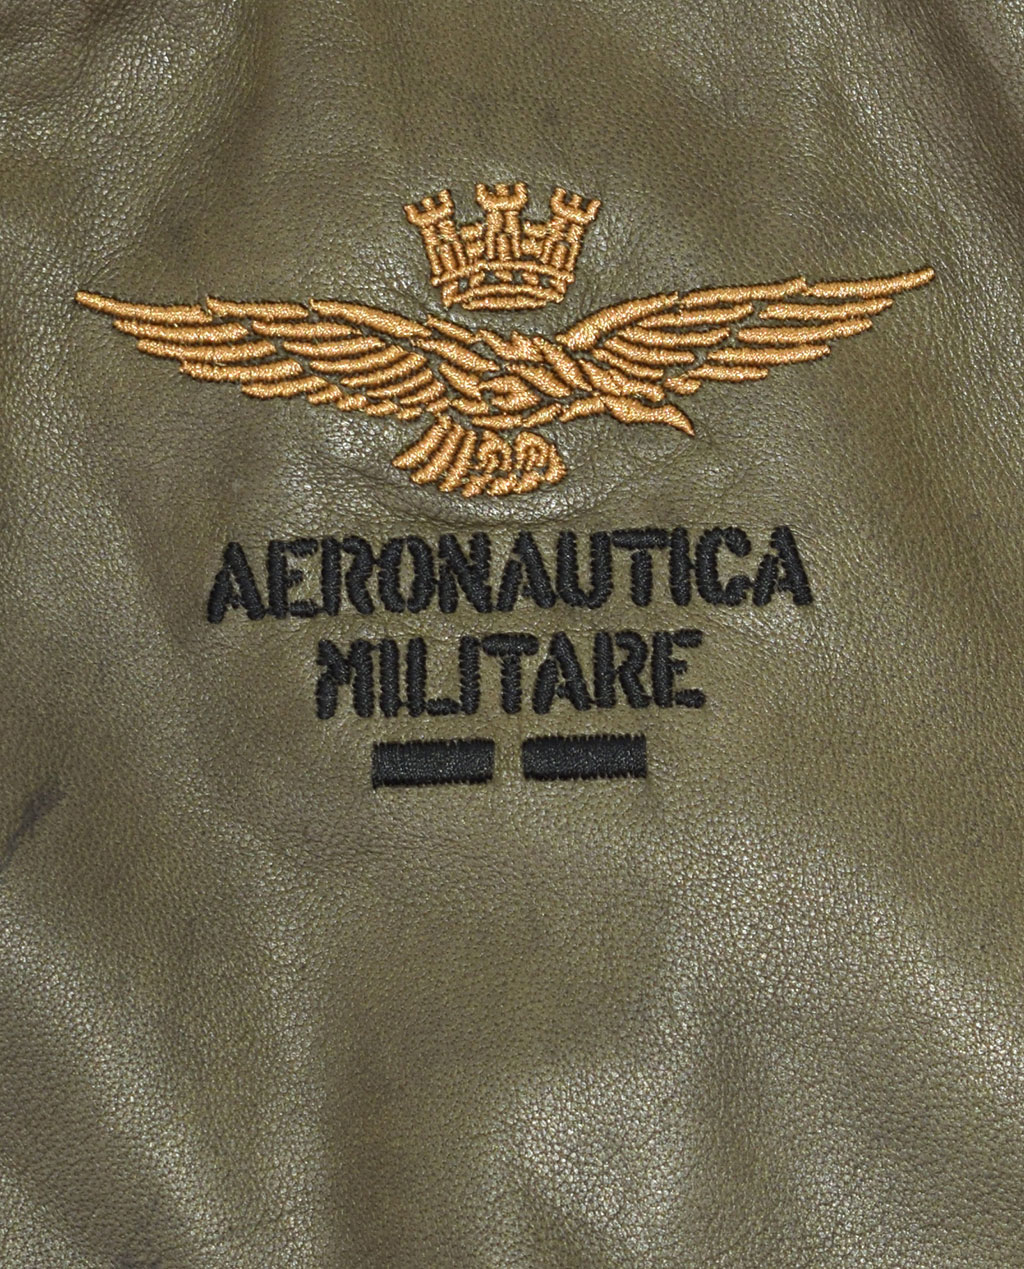 Бомбер AERONAUTICA MILITARE кожа SS 20/IT verde militare (PN 5009) 